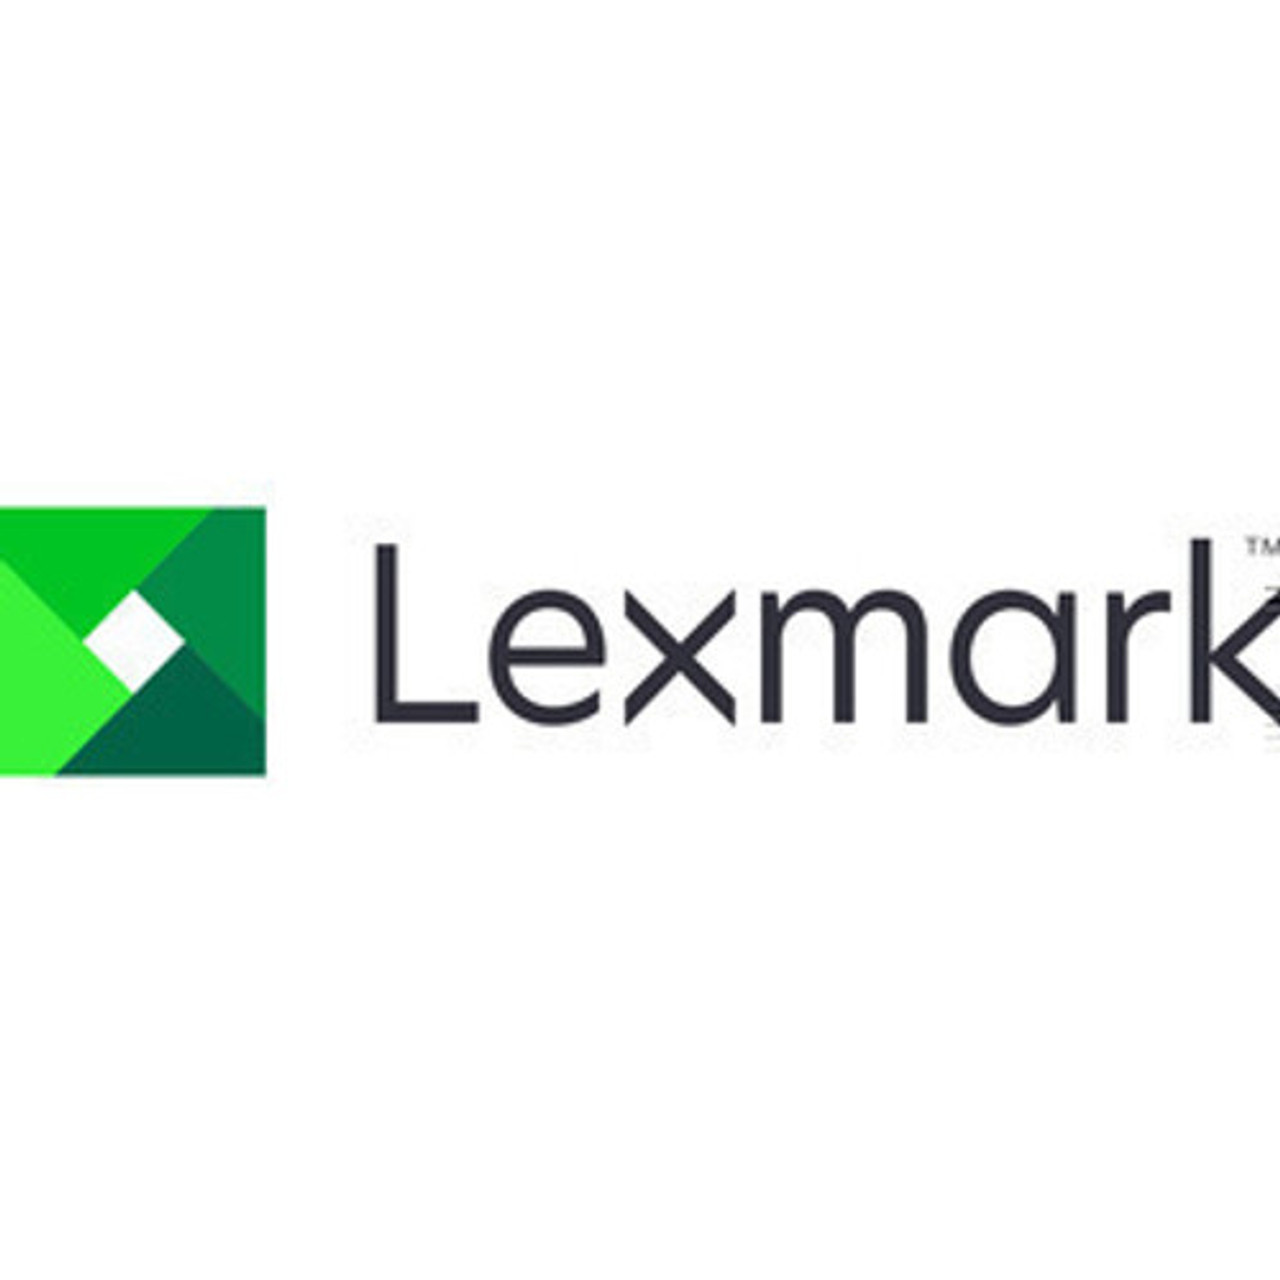 Lexmark 1 YEAR ONSITE REPAIR - MS632 - 2374875